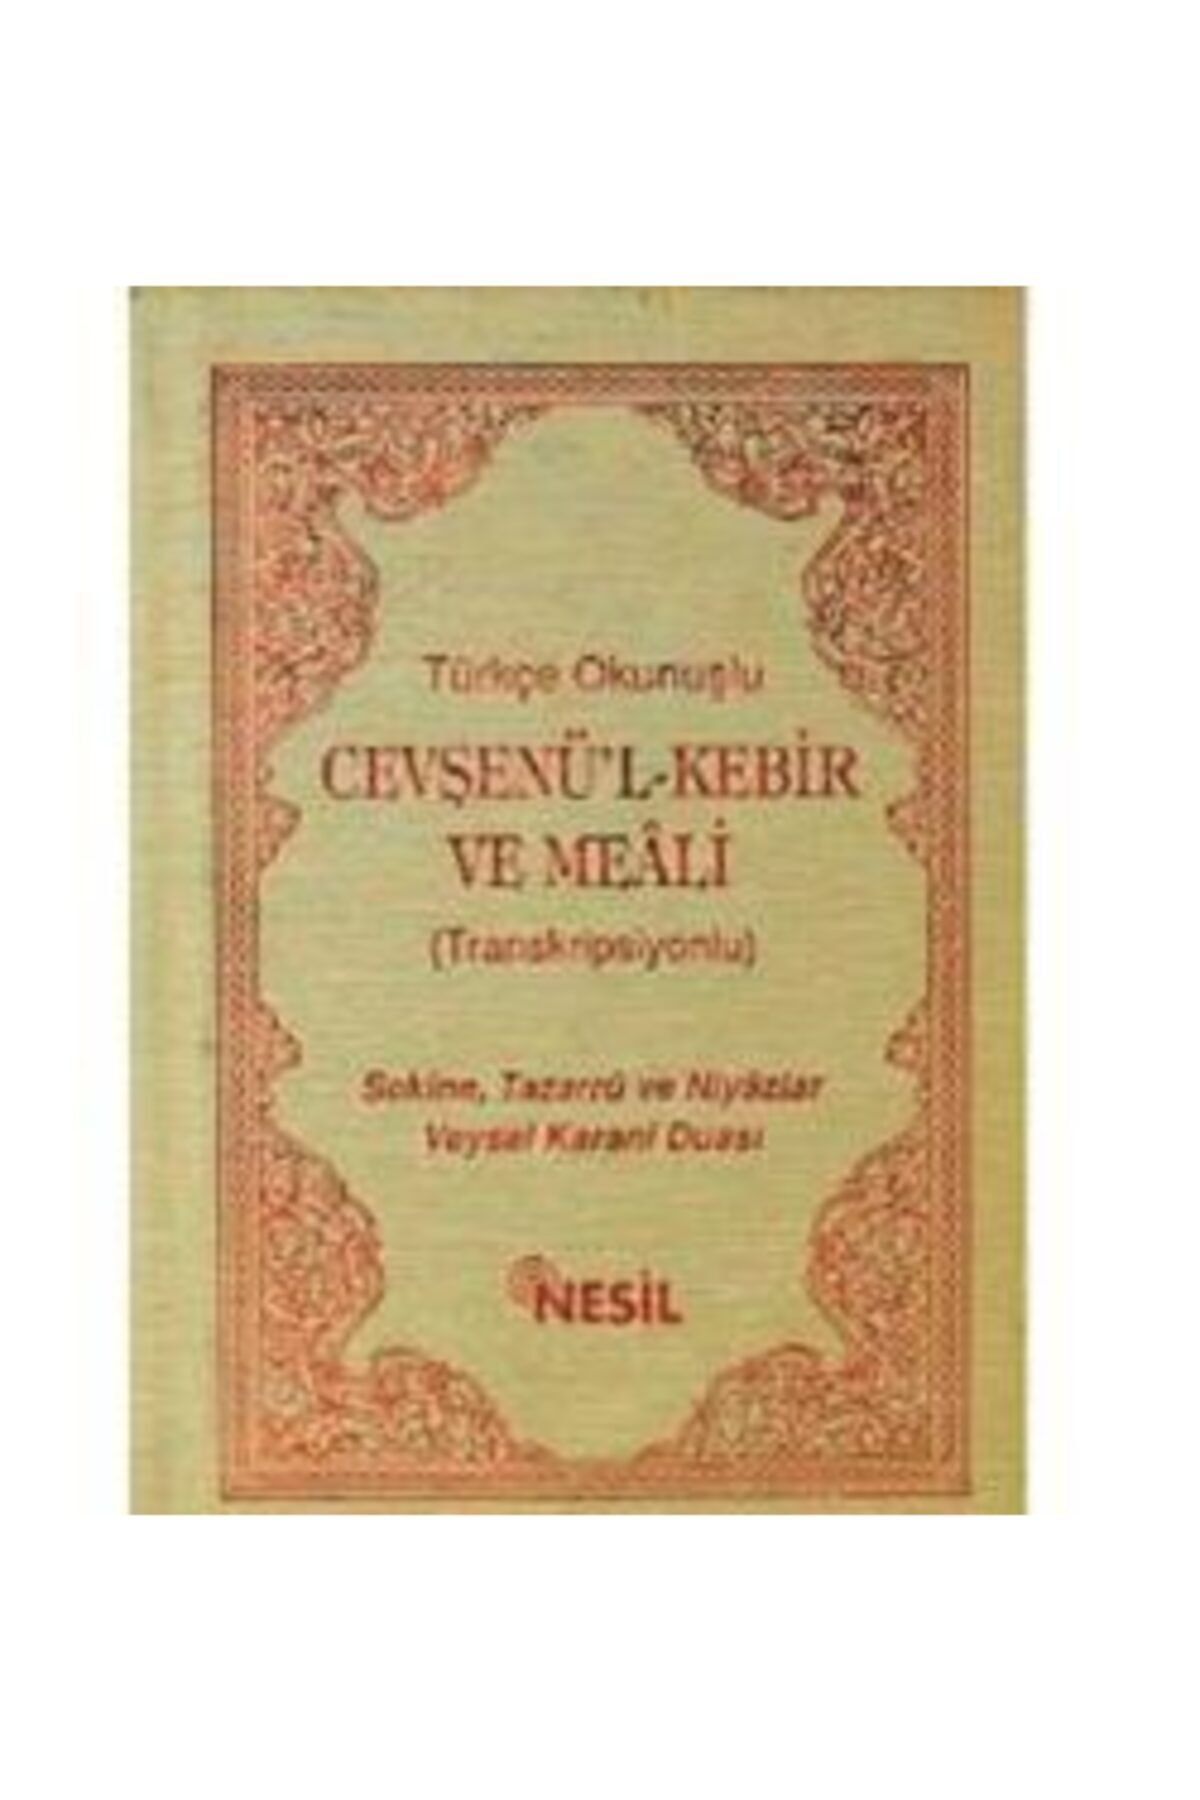 Nesil Yayınları Türkçe Okunuşlu Cevşenü’l Kebir Ve Meali (transkripsiyonlu)